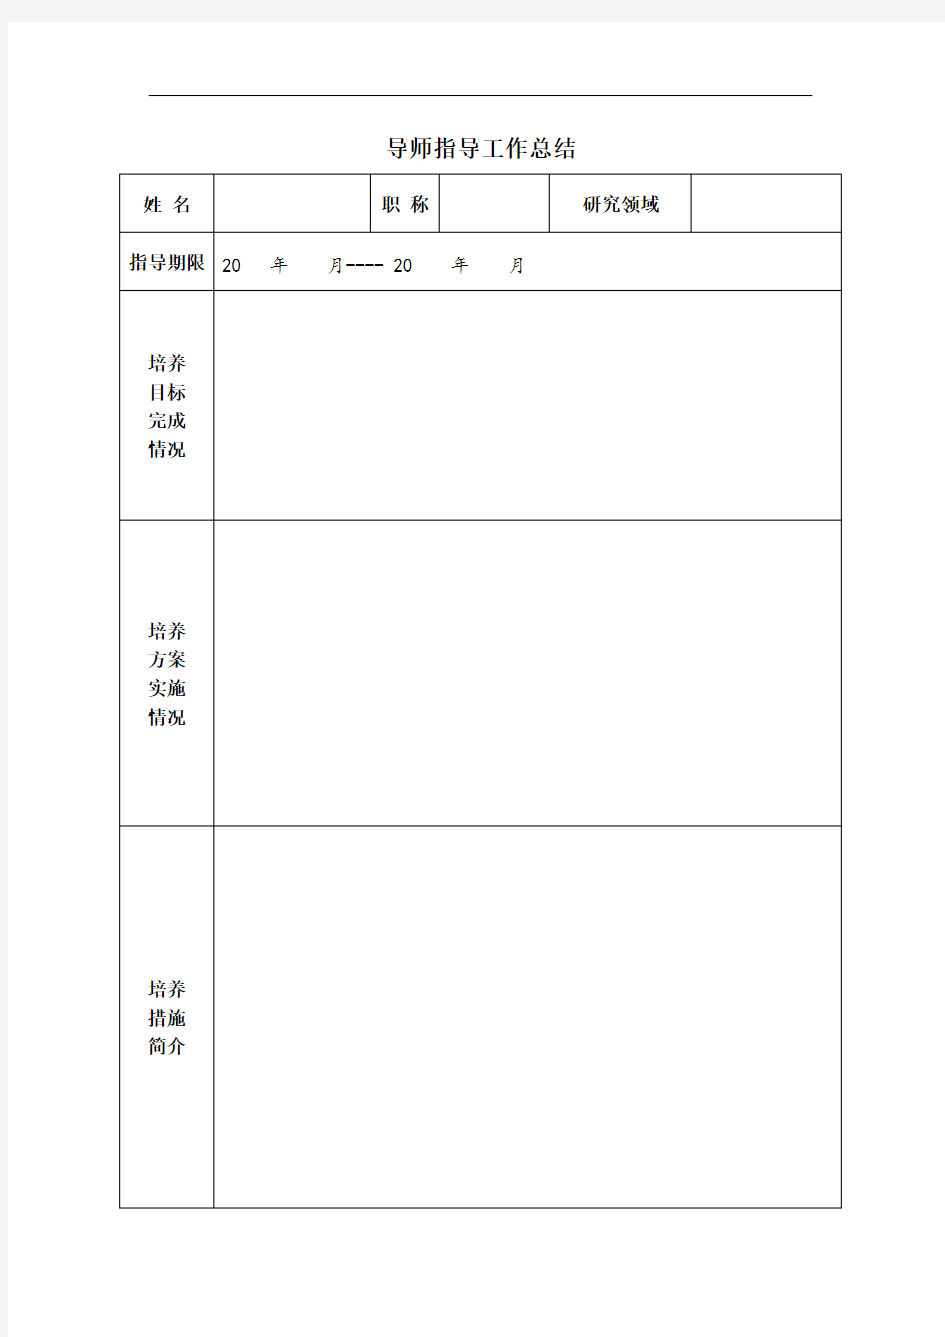 南京工程学院 青年教师导师制考核申请表